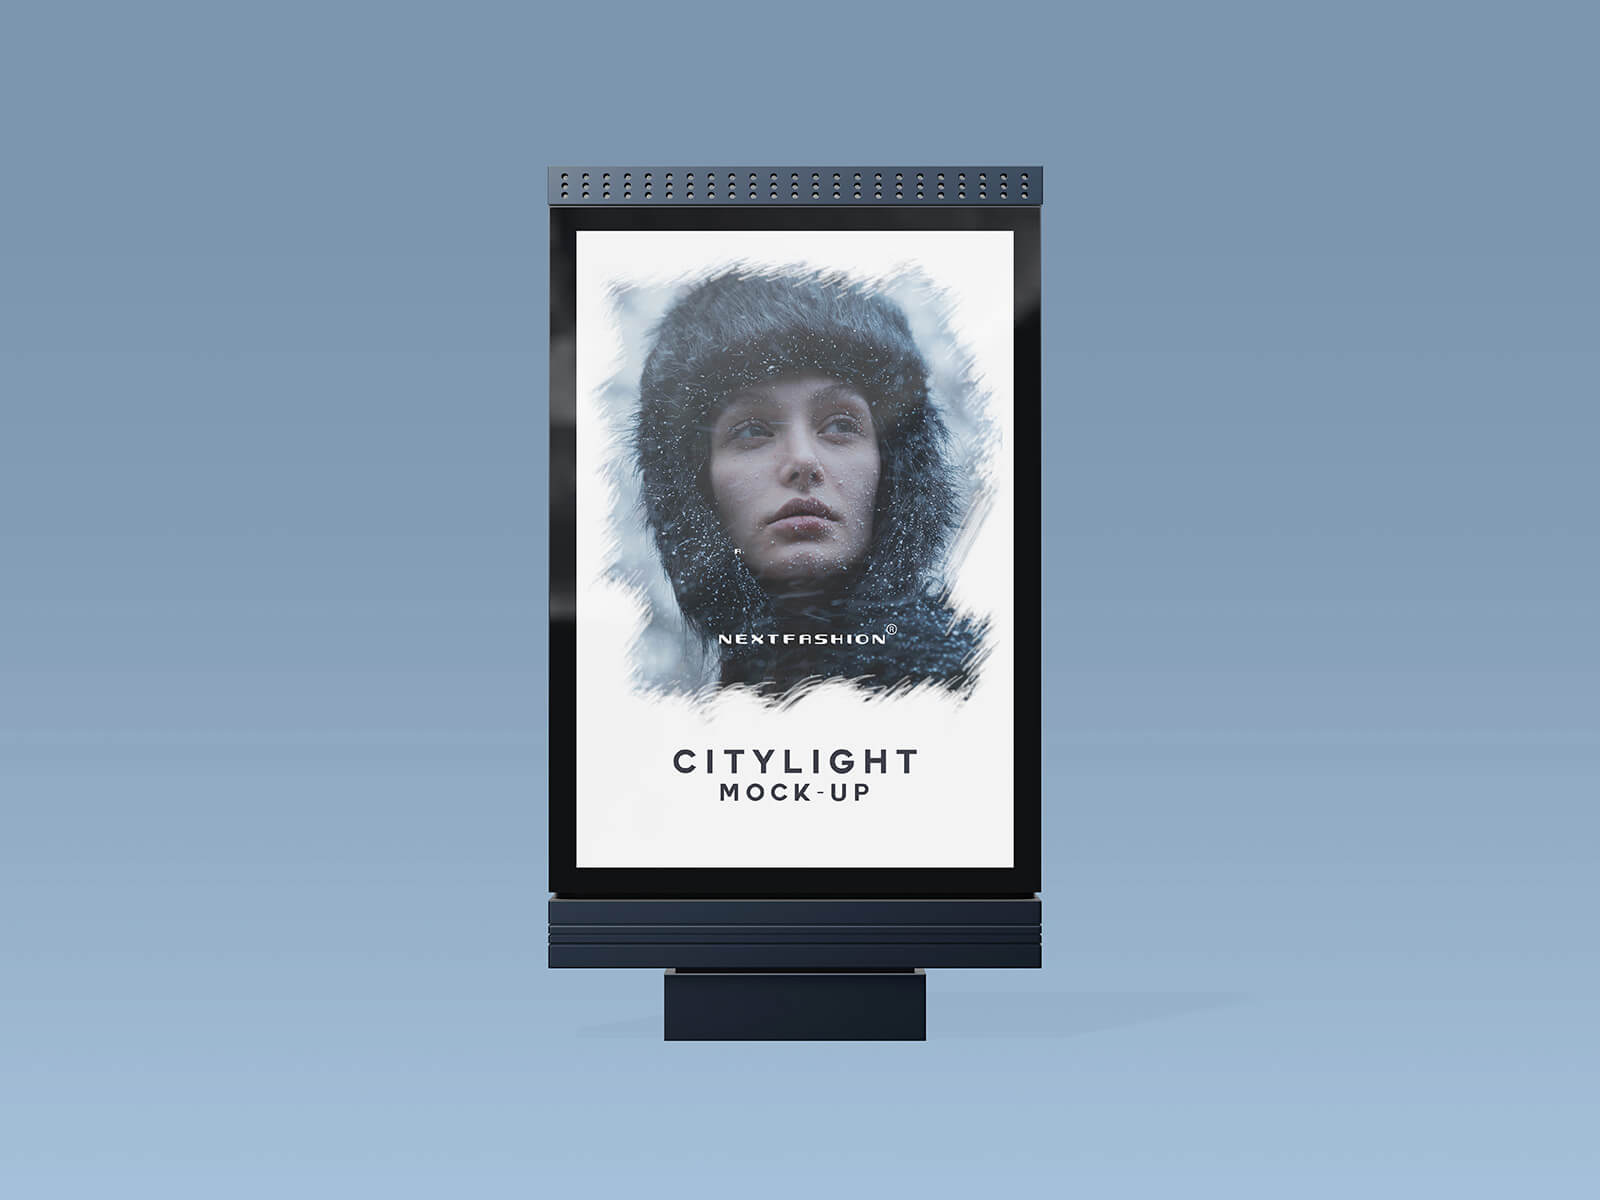 Citylightポスターのモックアップセット